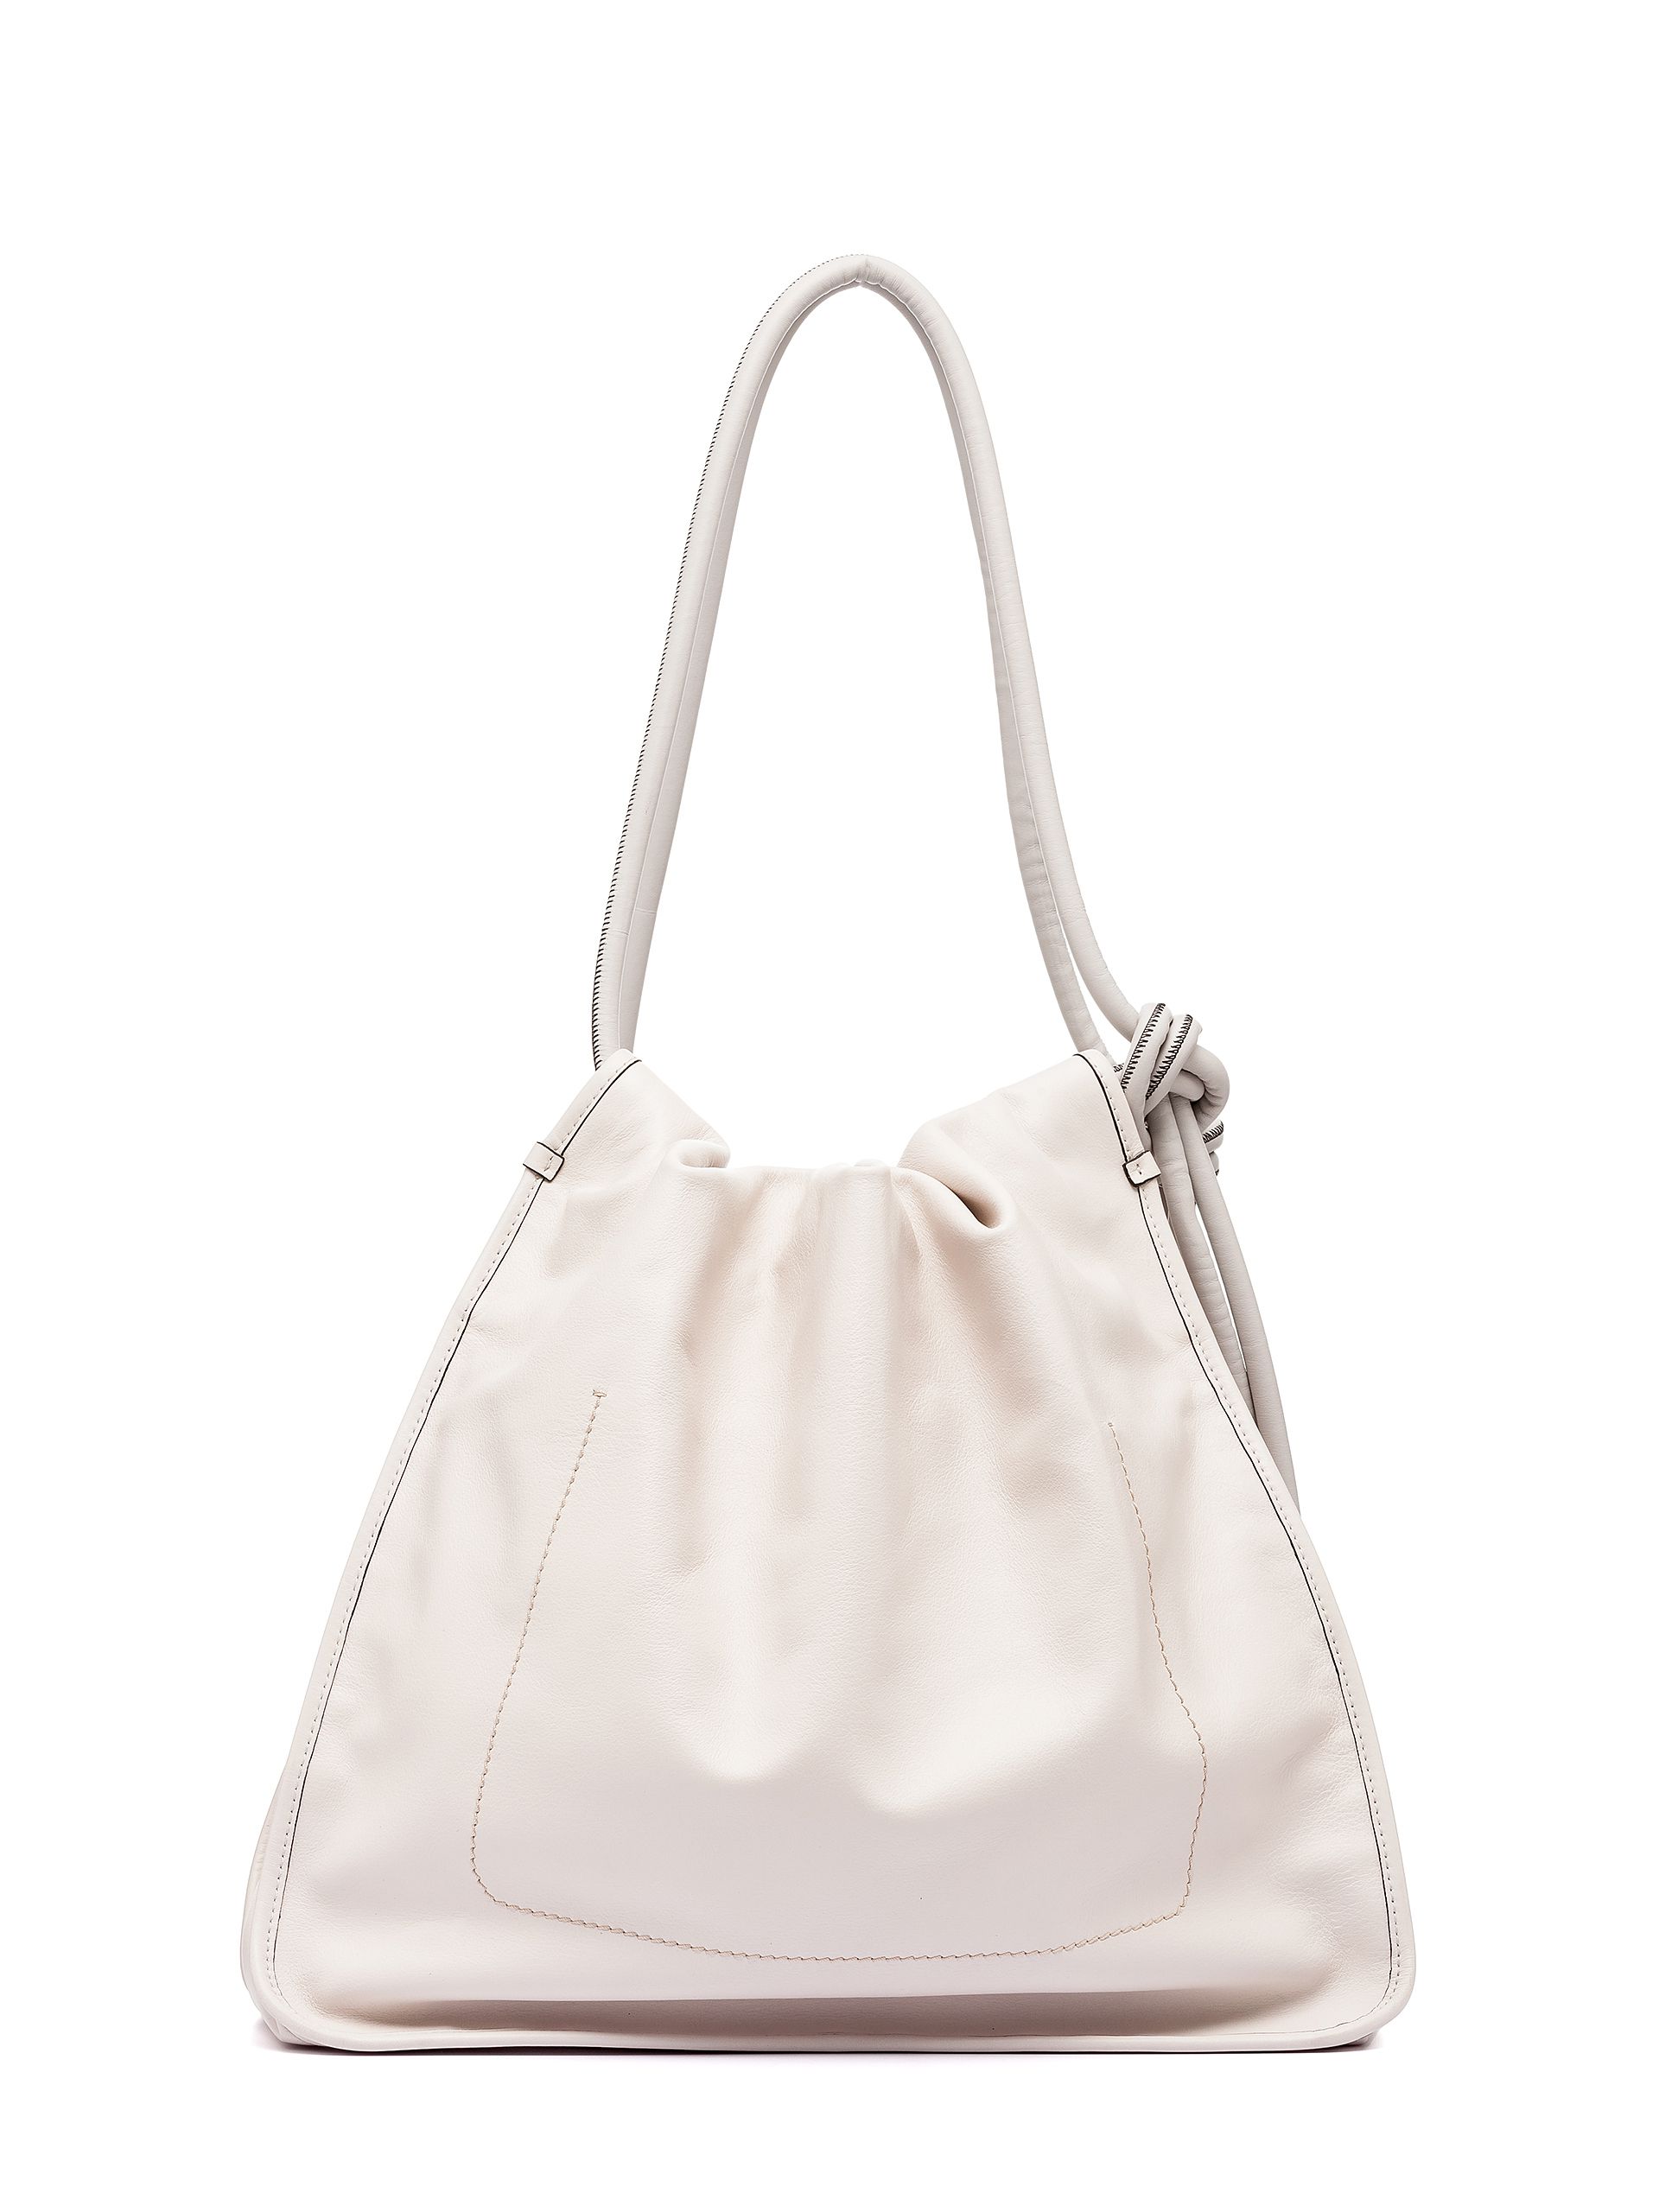 Summer Handbags: The Bag to Carry This Season | Fashion.Luxury